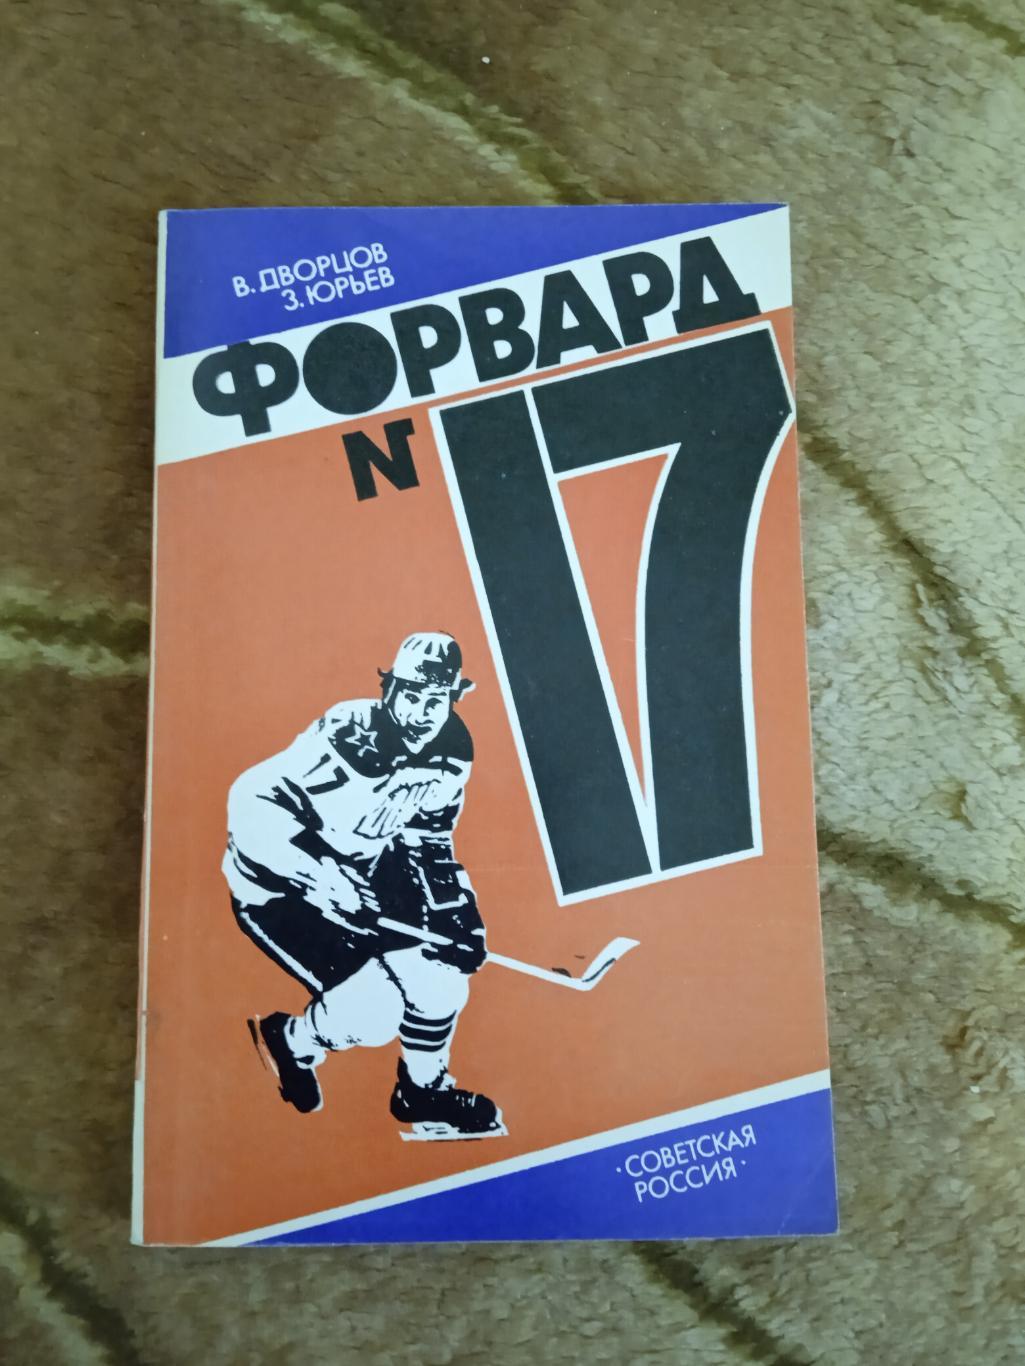 В.Дворцов,З.Юрьев.Форвард № 17.Советская Россия 1984+вкладка.